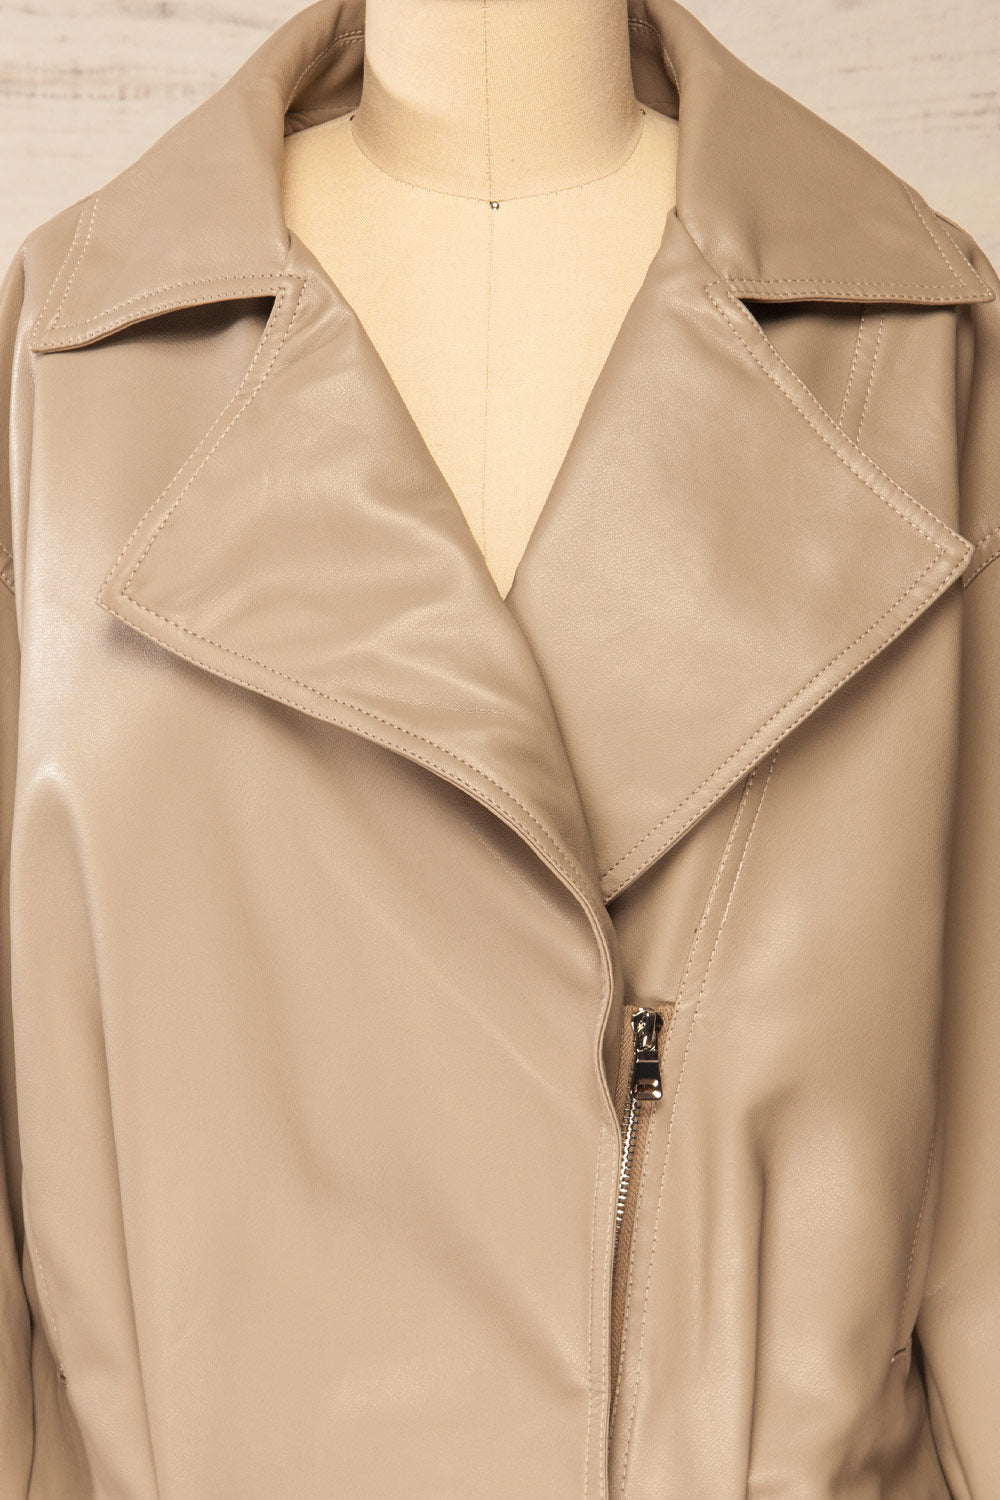 Nantes Taupe Faux Leather Jacket | La petite garçonne front close-up